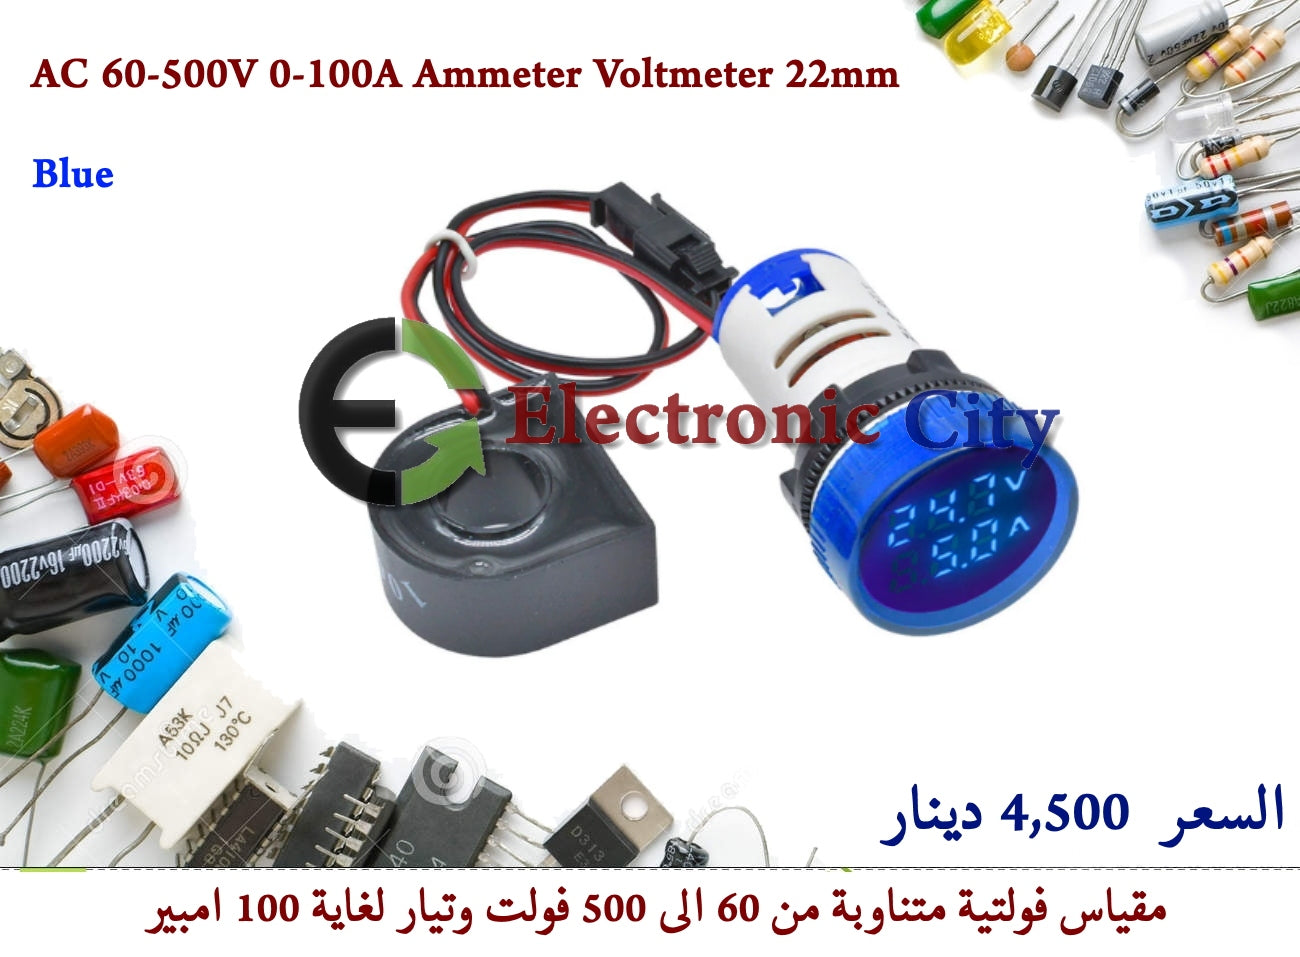 AC 60-500V 0-100A Ammeter Voltmeter 22mm Blue #E6 X30574IA